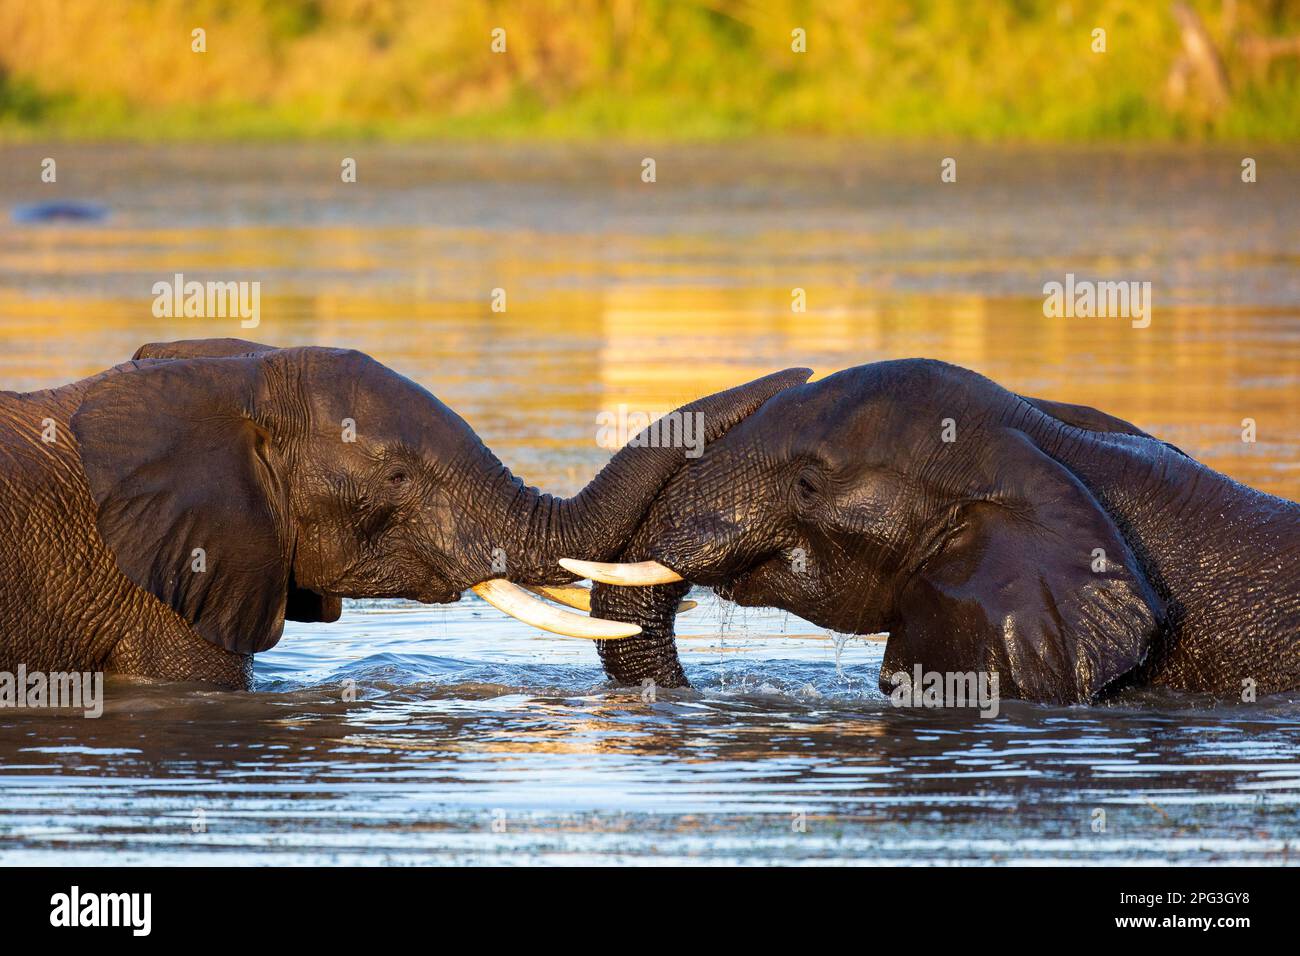 Zwei afrikanische Elefantenbullen stehen Kopf an Kopf und spielen im Wasser Stockfoto